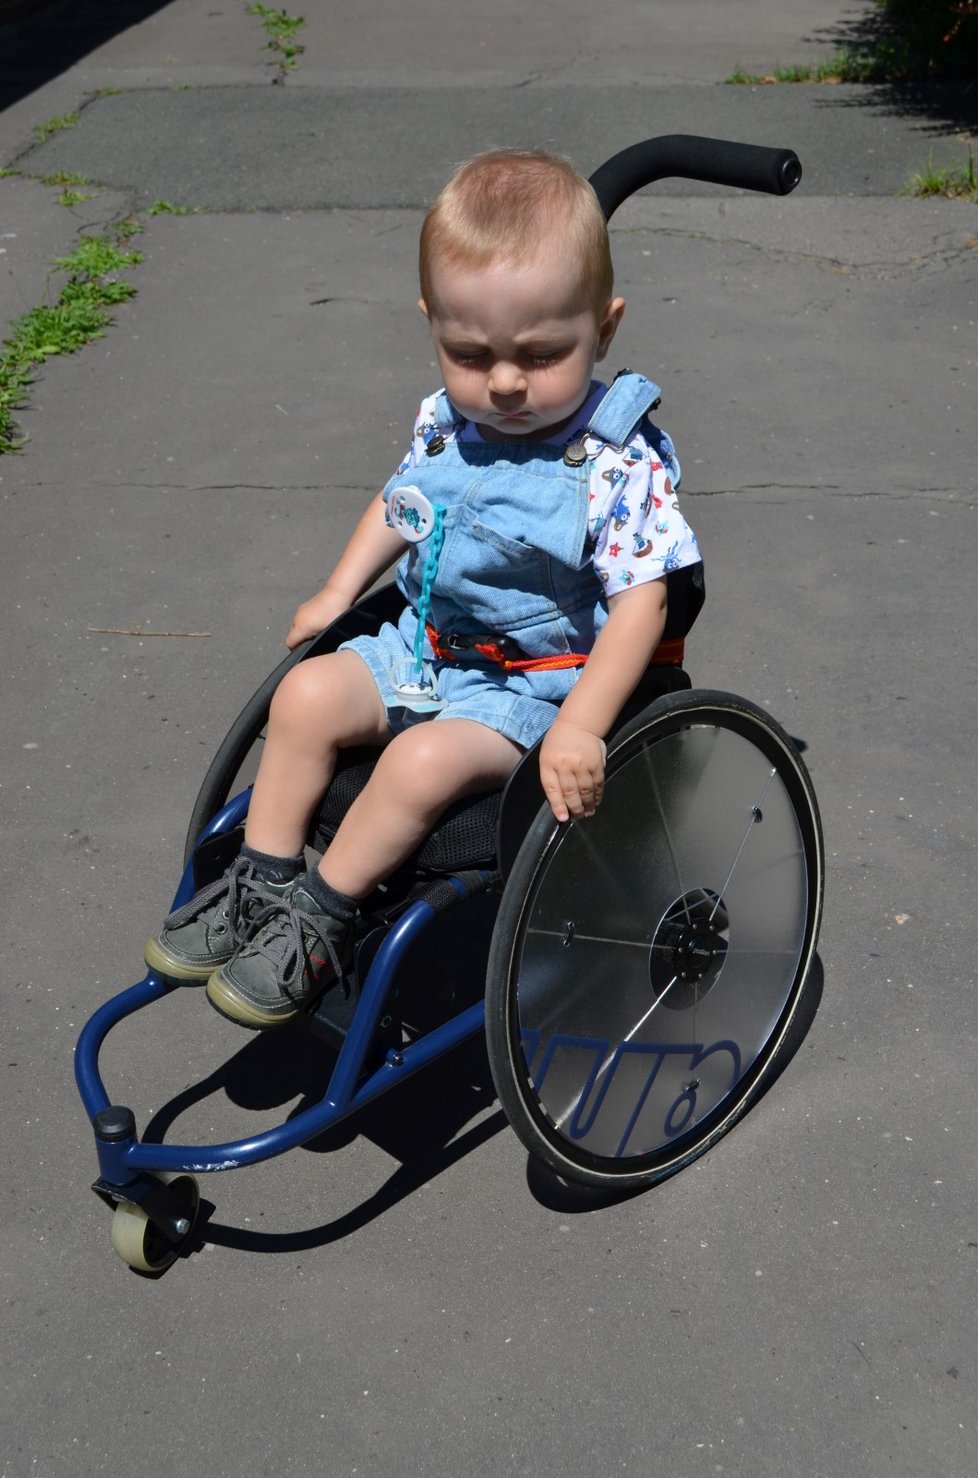 Tomášek Fiala (2, archivní snímek) z Ostravy se pohybuje zatím na vozíku, rodina věří, že jednou bude chodit.